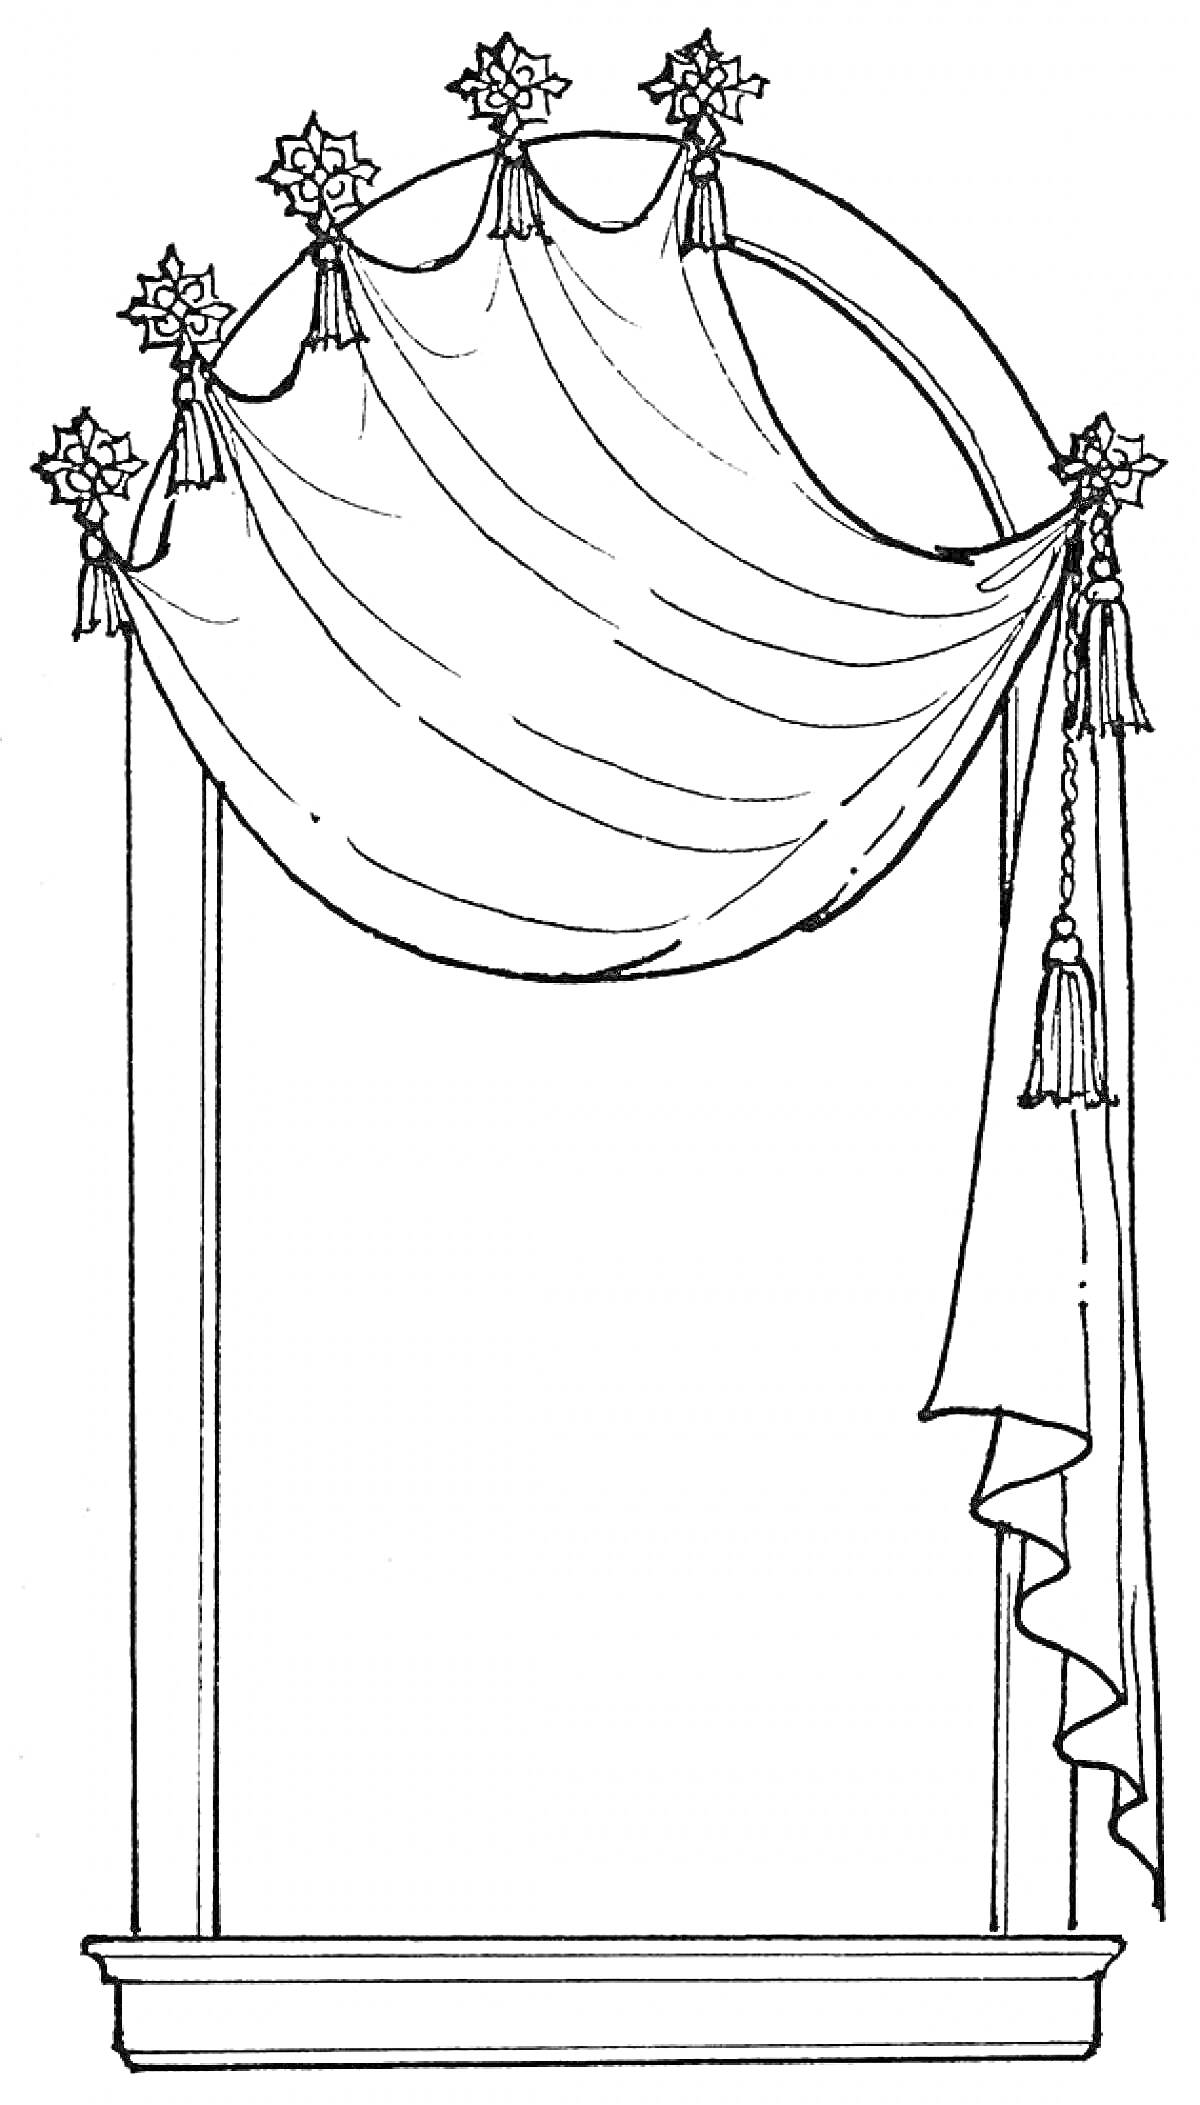 Раскраска Арочный оконный проем со шторами и декоративными элементами в виде звезд на концах